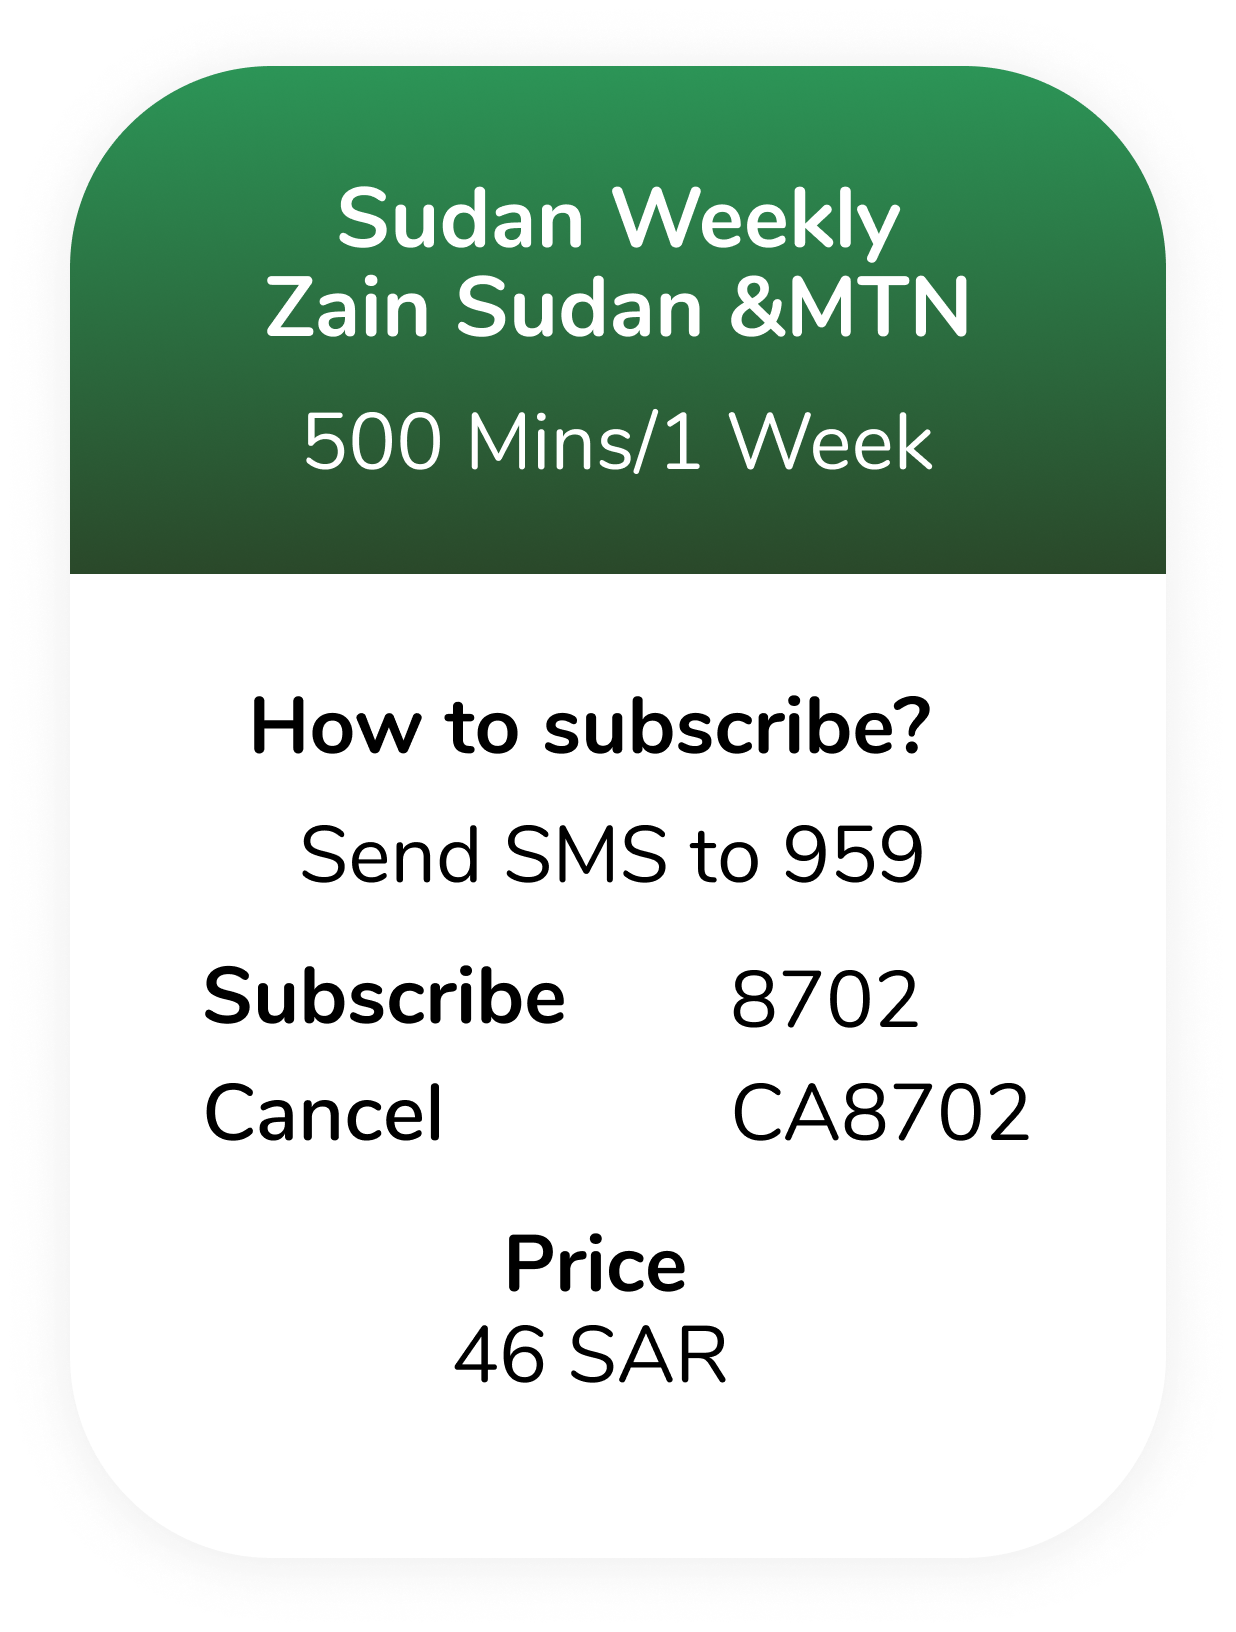 Sudan Weekly